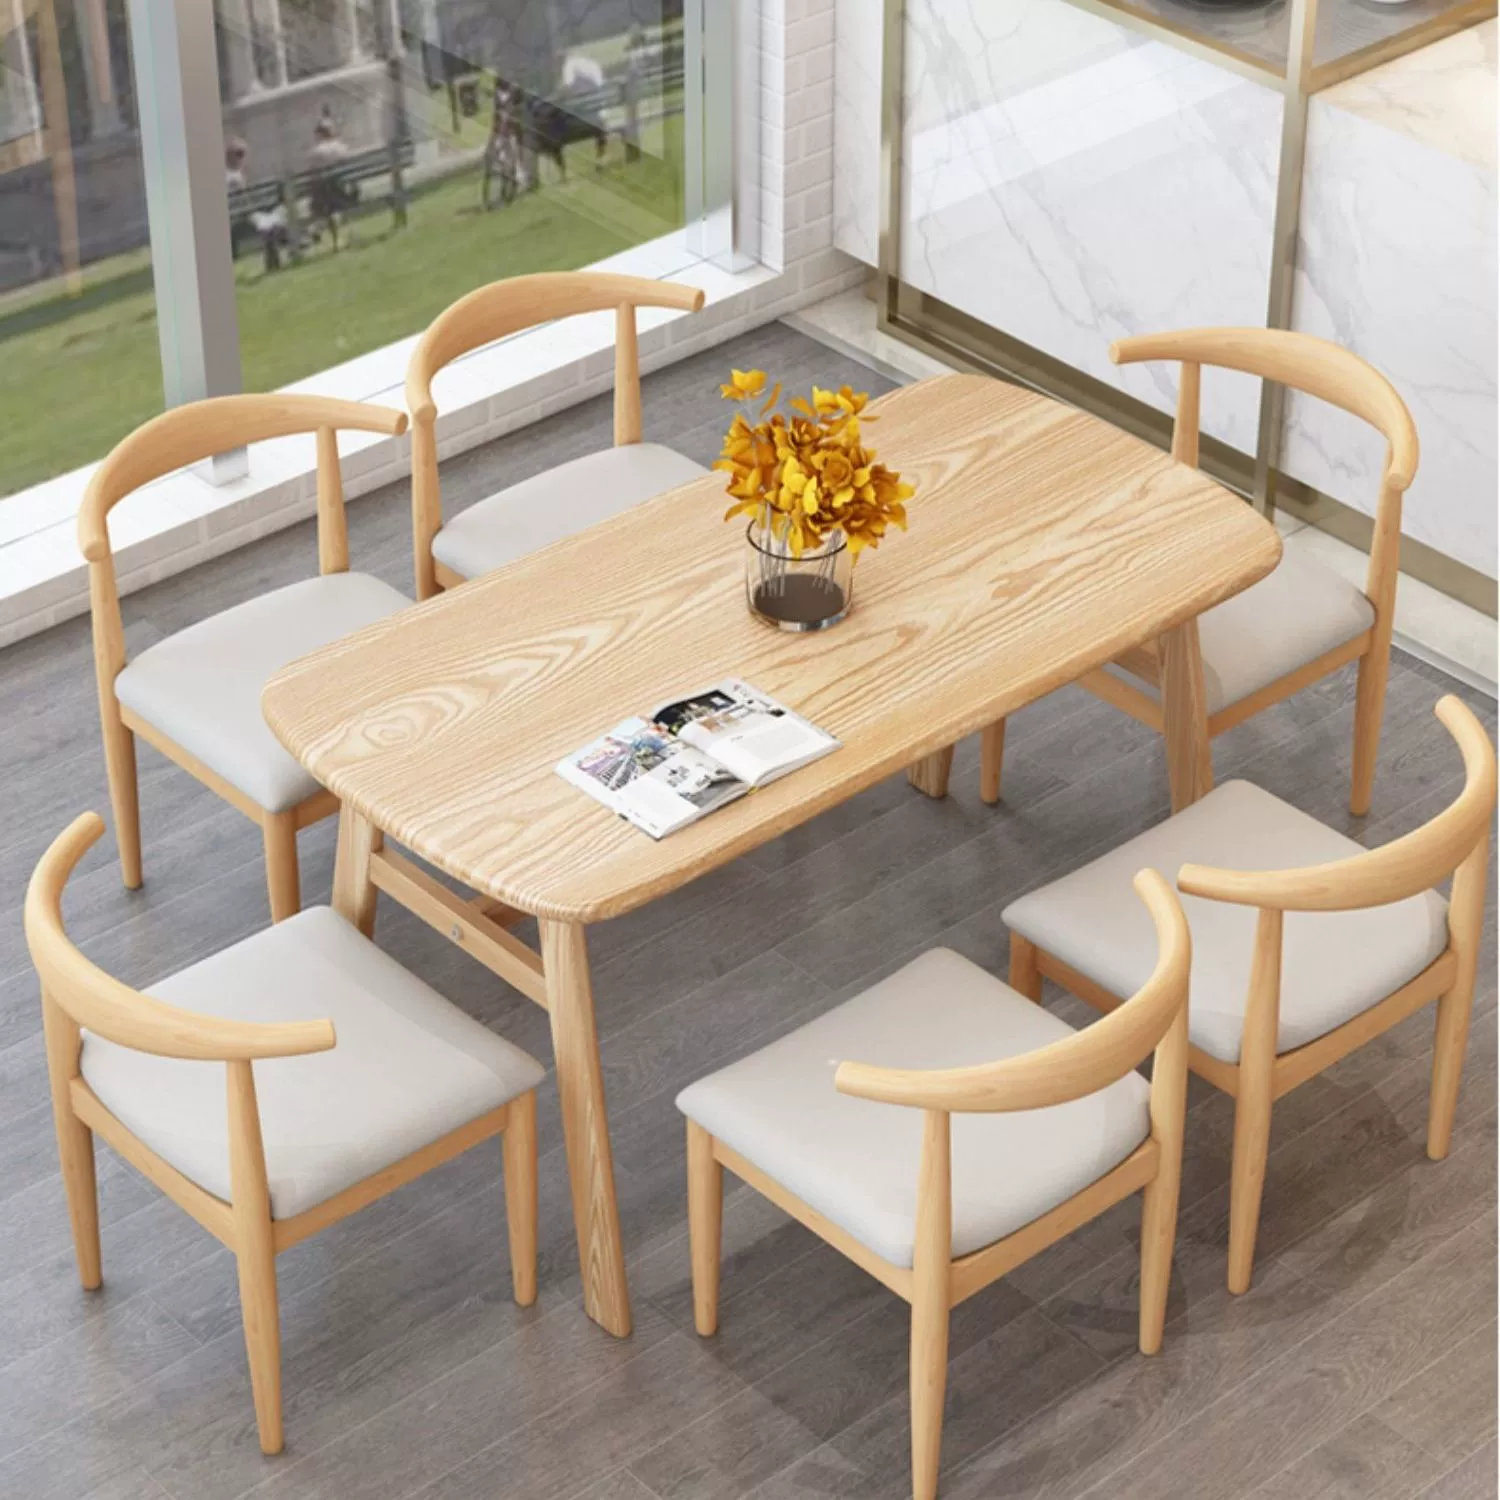 Bàn ăn chung cư nhỏ bàn ăn sắt giả vân gỗ kết hợp bàn ghế nhà hàng Bắc Âu đơn giản bàn ăn hình chữ nhật đơn giản bàn ăn inox bàn ăn tròn 6 ghế 